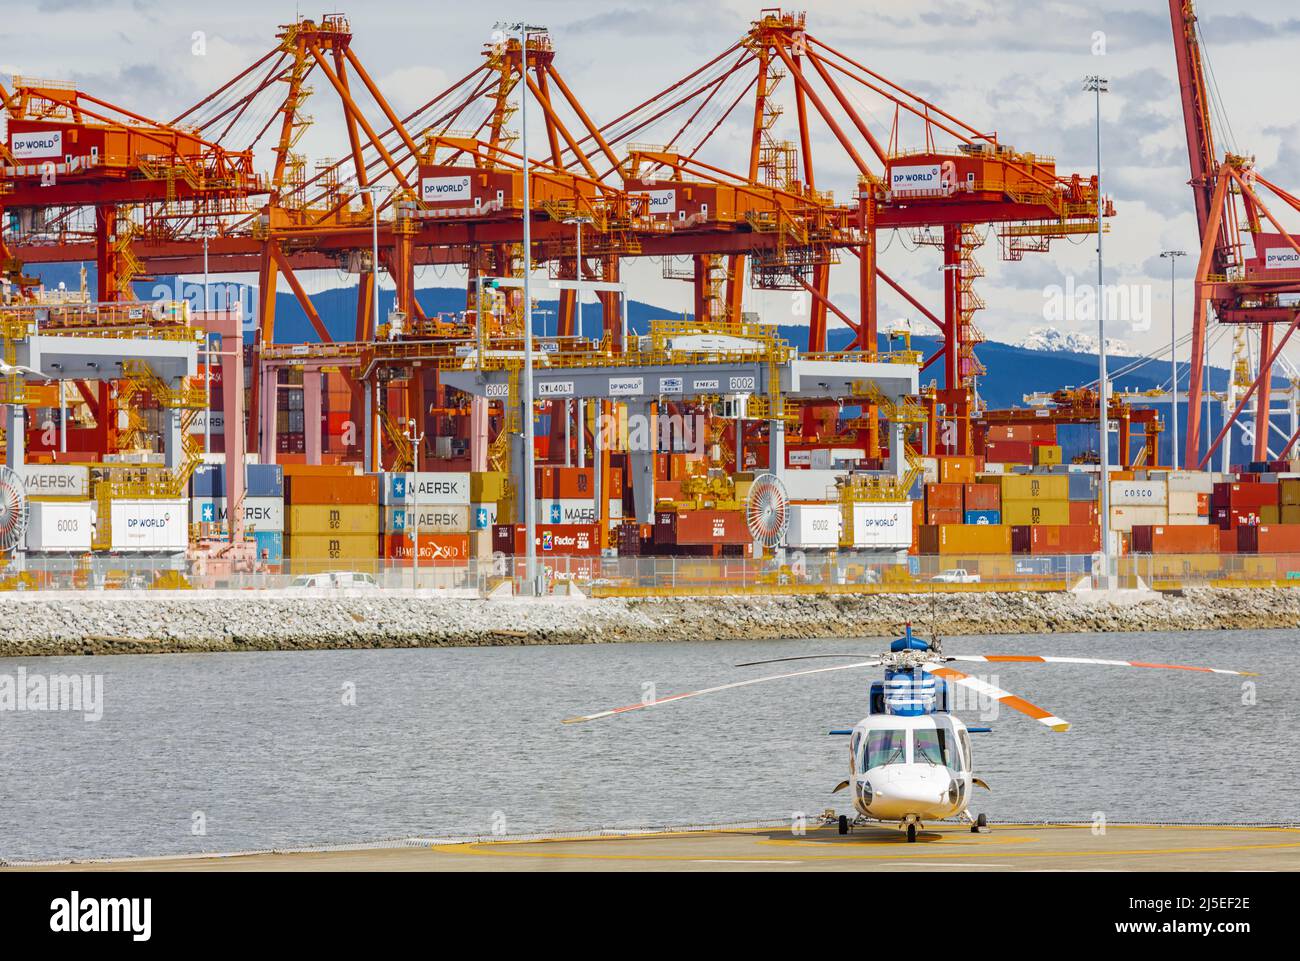 Containerhafenterminal in Vancouver BC, Kanada - einer der drei größten Häfen an der Westküste Nordamerikas Stockfoto